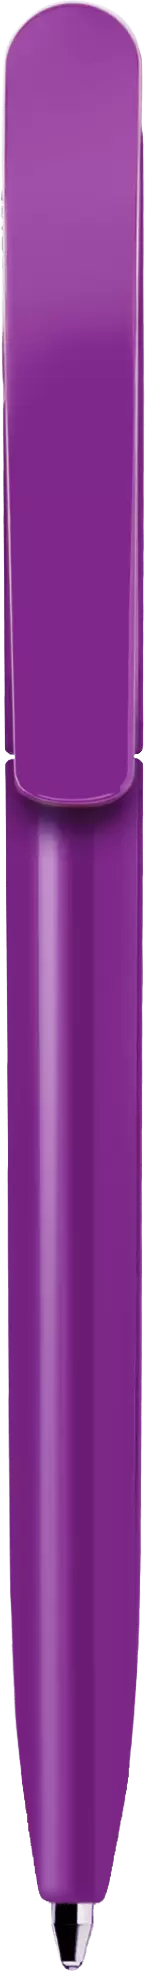 Ручка VIVALDI COLOR Фиолетовая (сиреневая) 1336-24